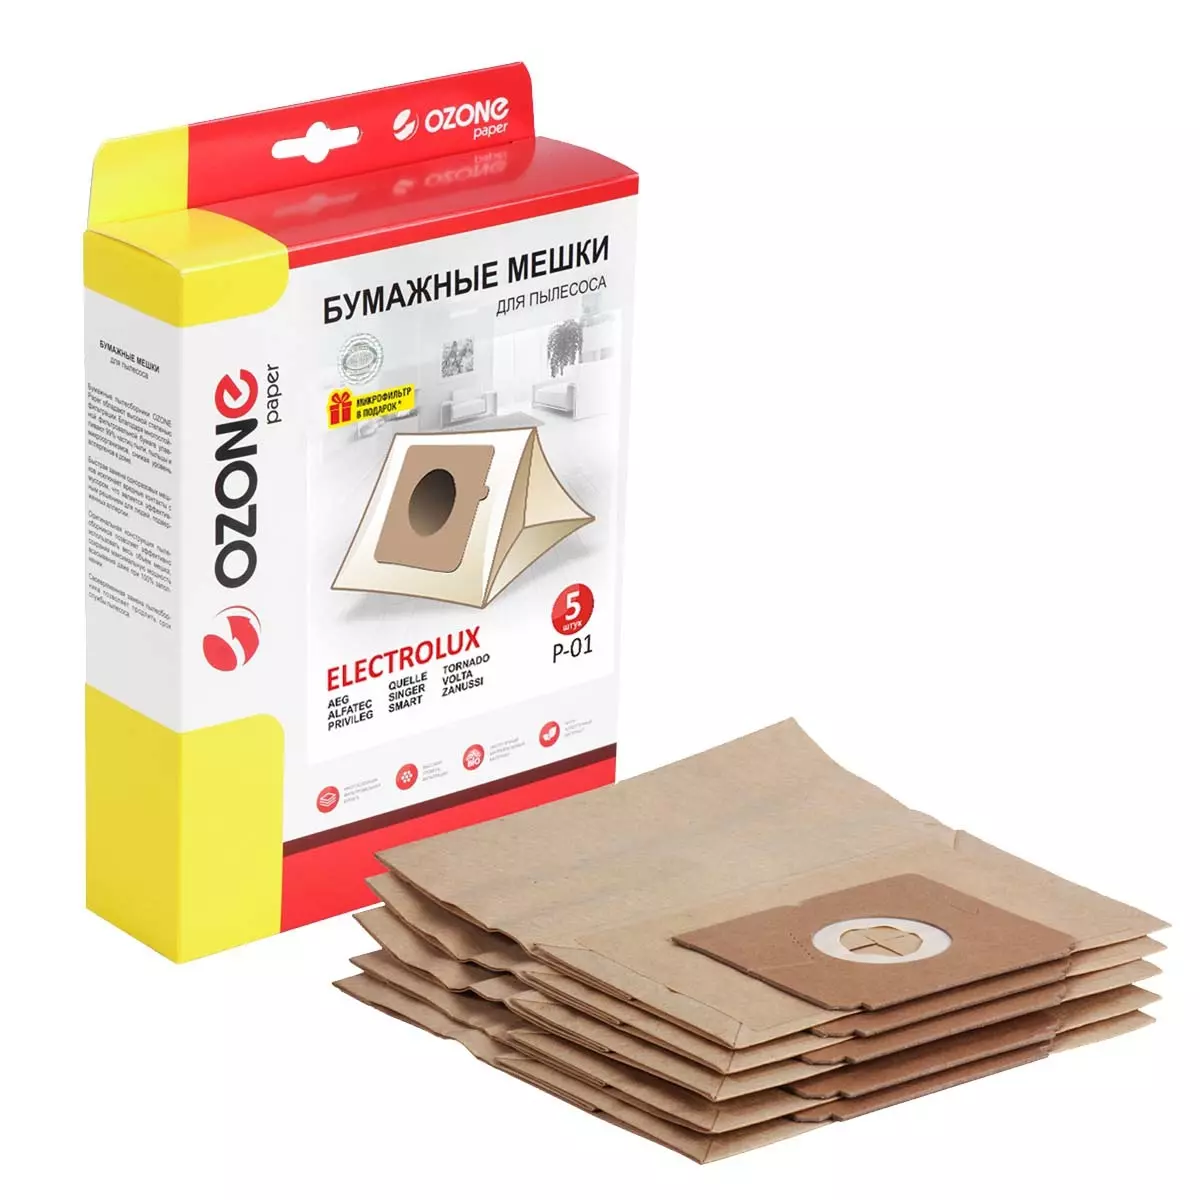 Мешки-пылесборники Ozone P-01 бумажные для пылесоса 5шт+микрофильтр